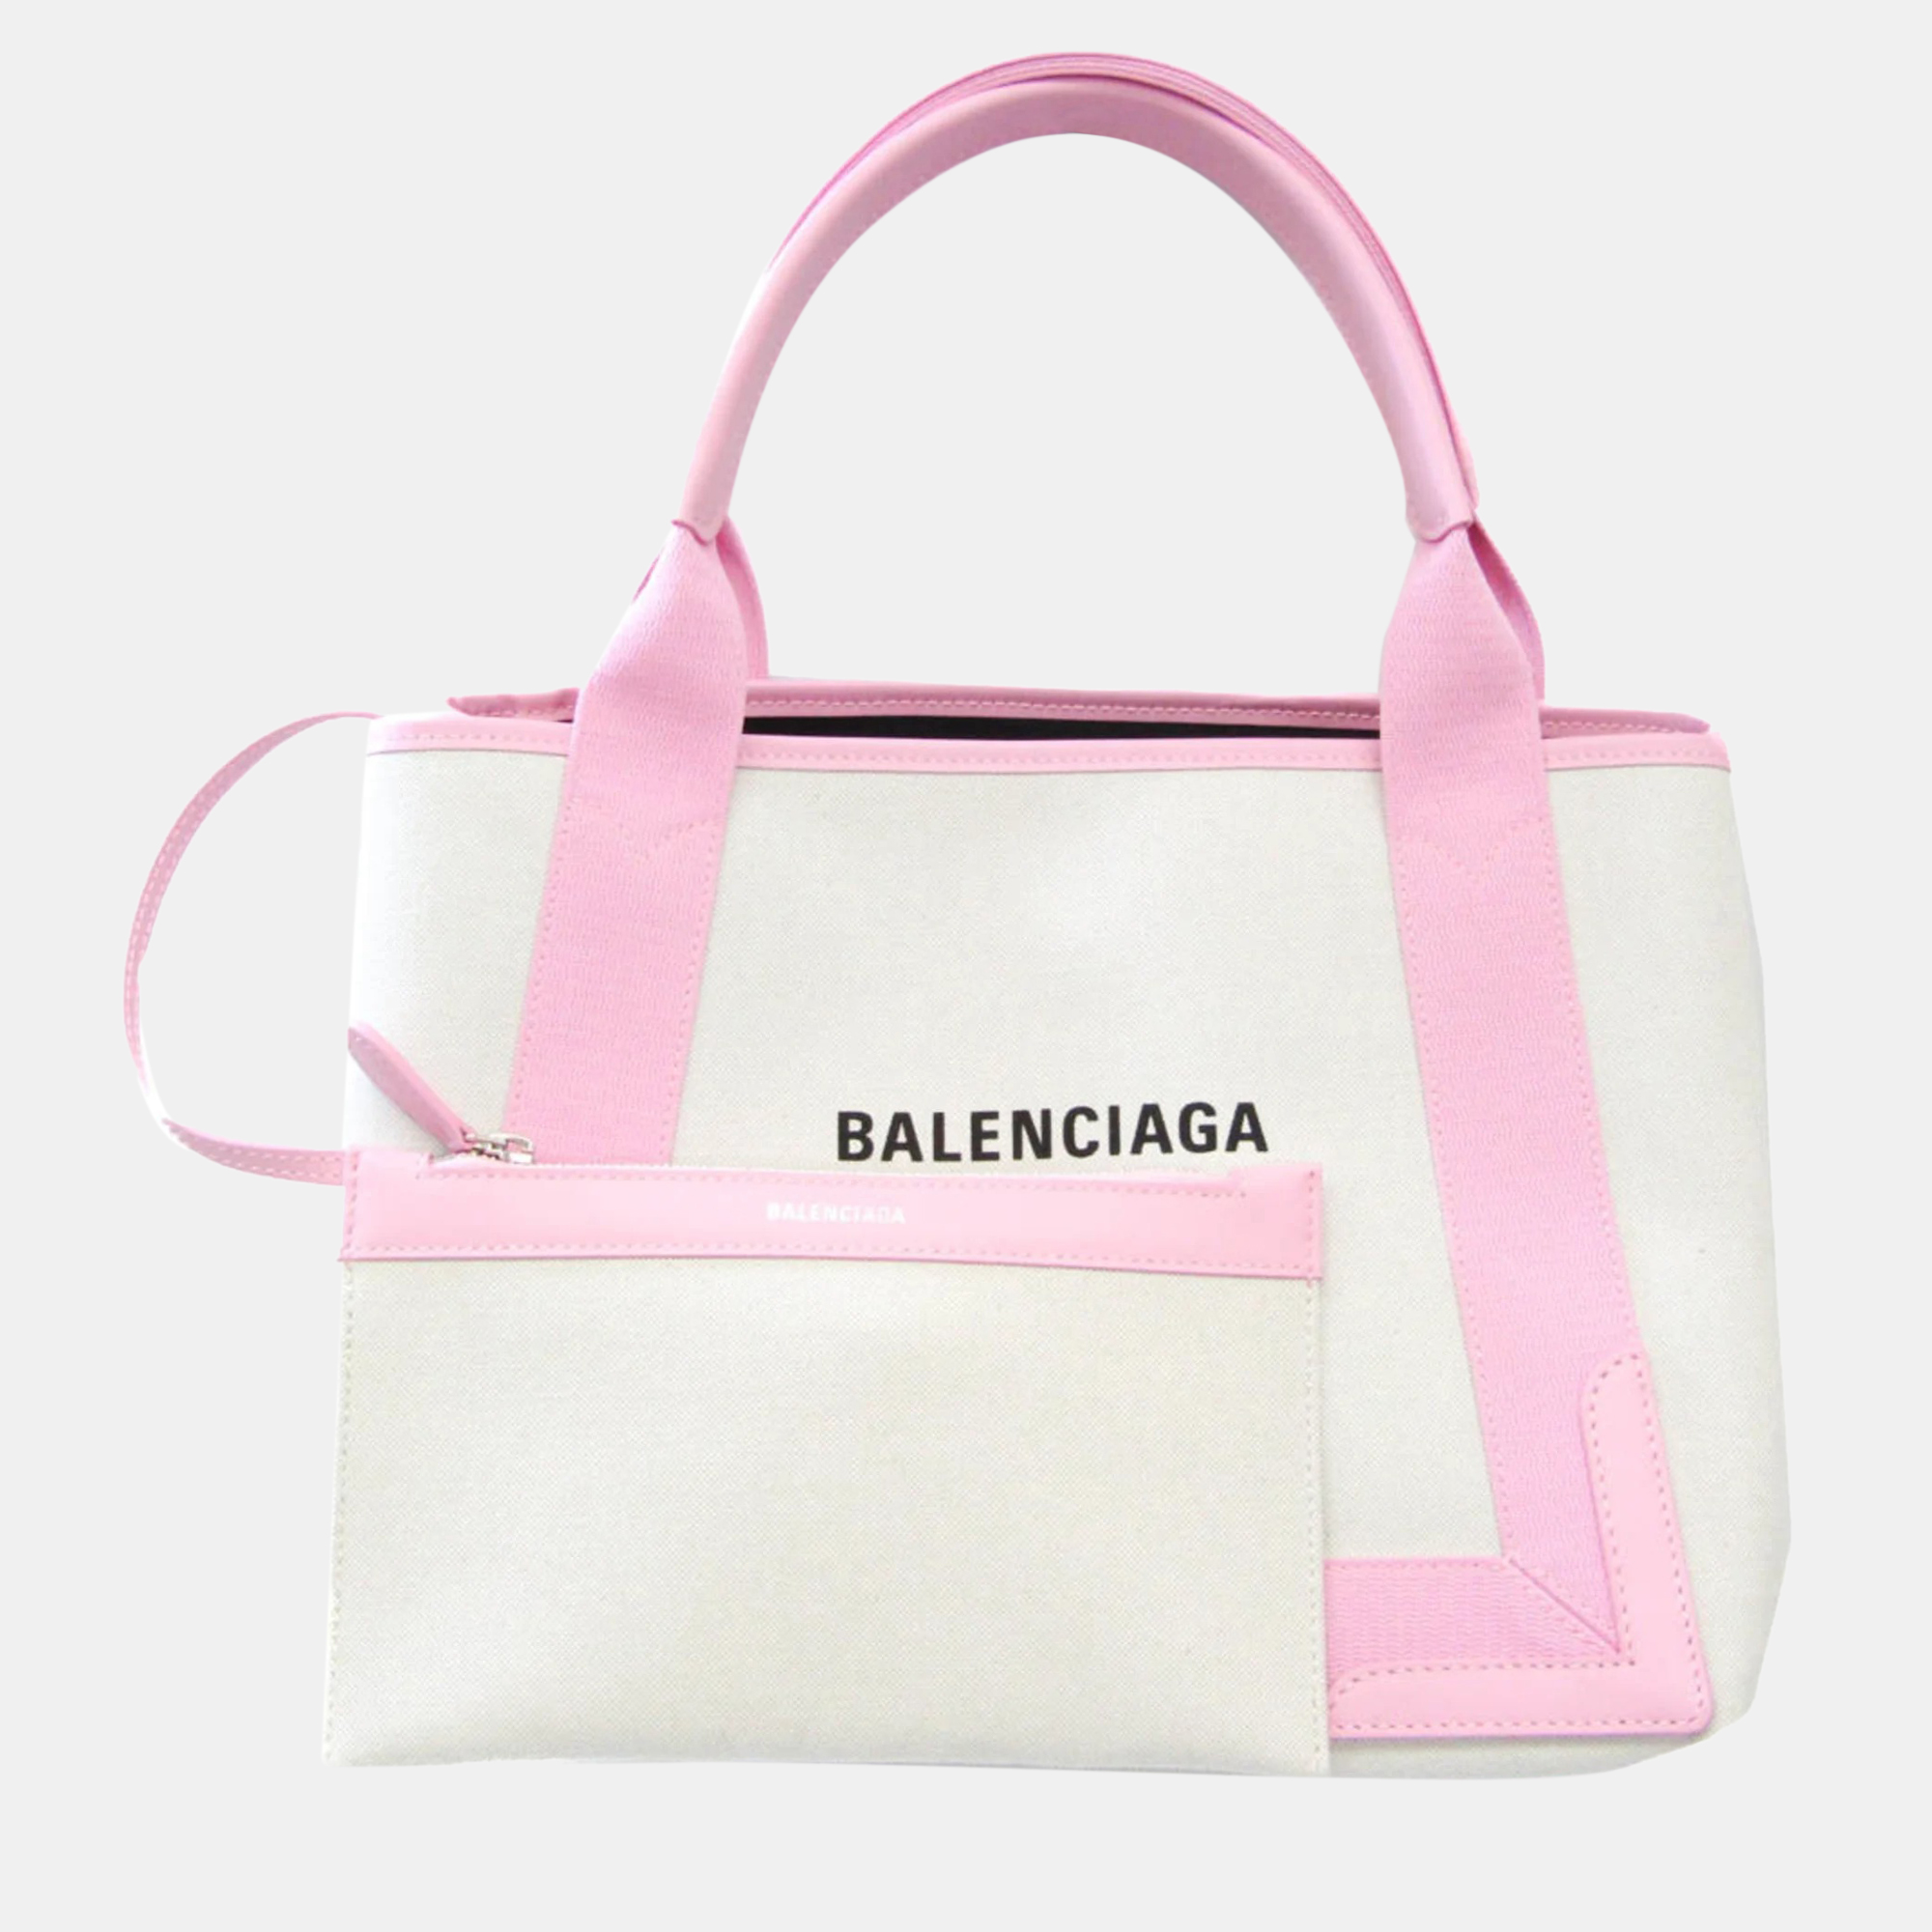 Balenciaga light pink/white canvas navy cabas s tote